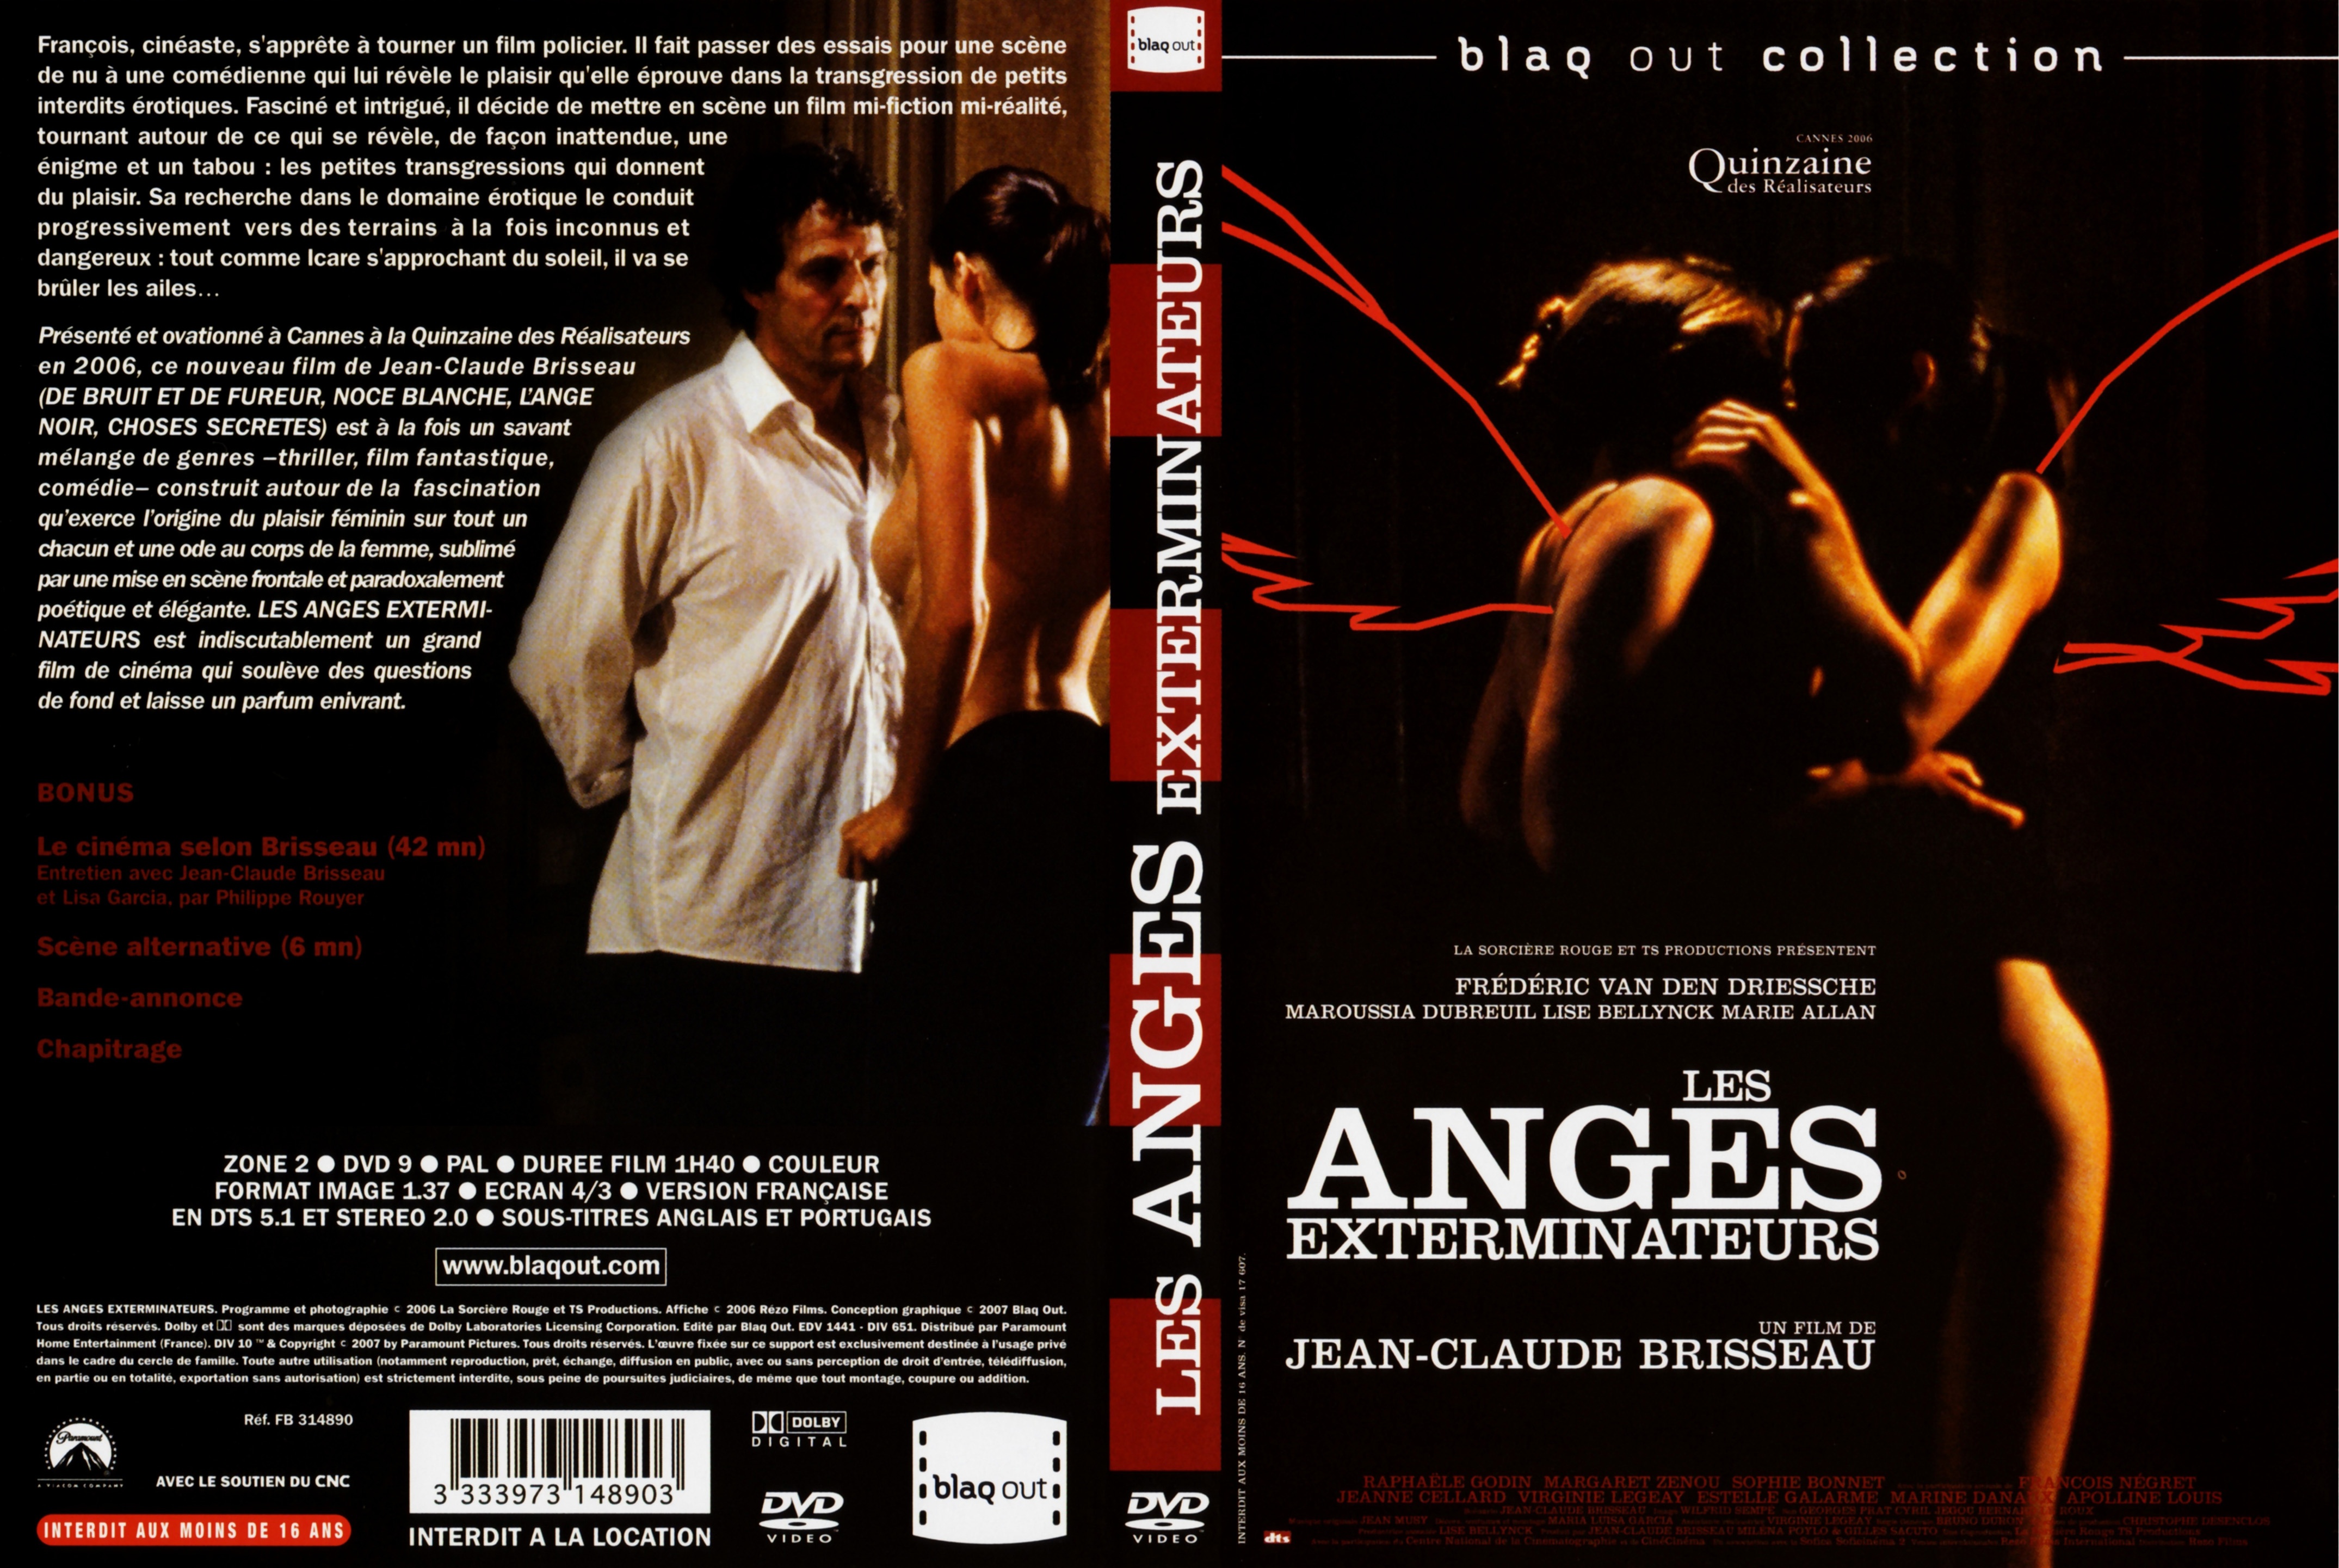 Jaquette DVD Les anges exterminateurs